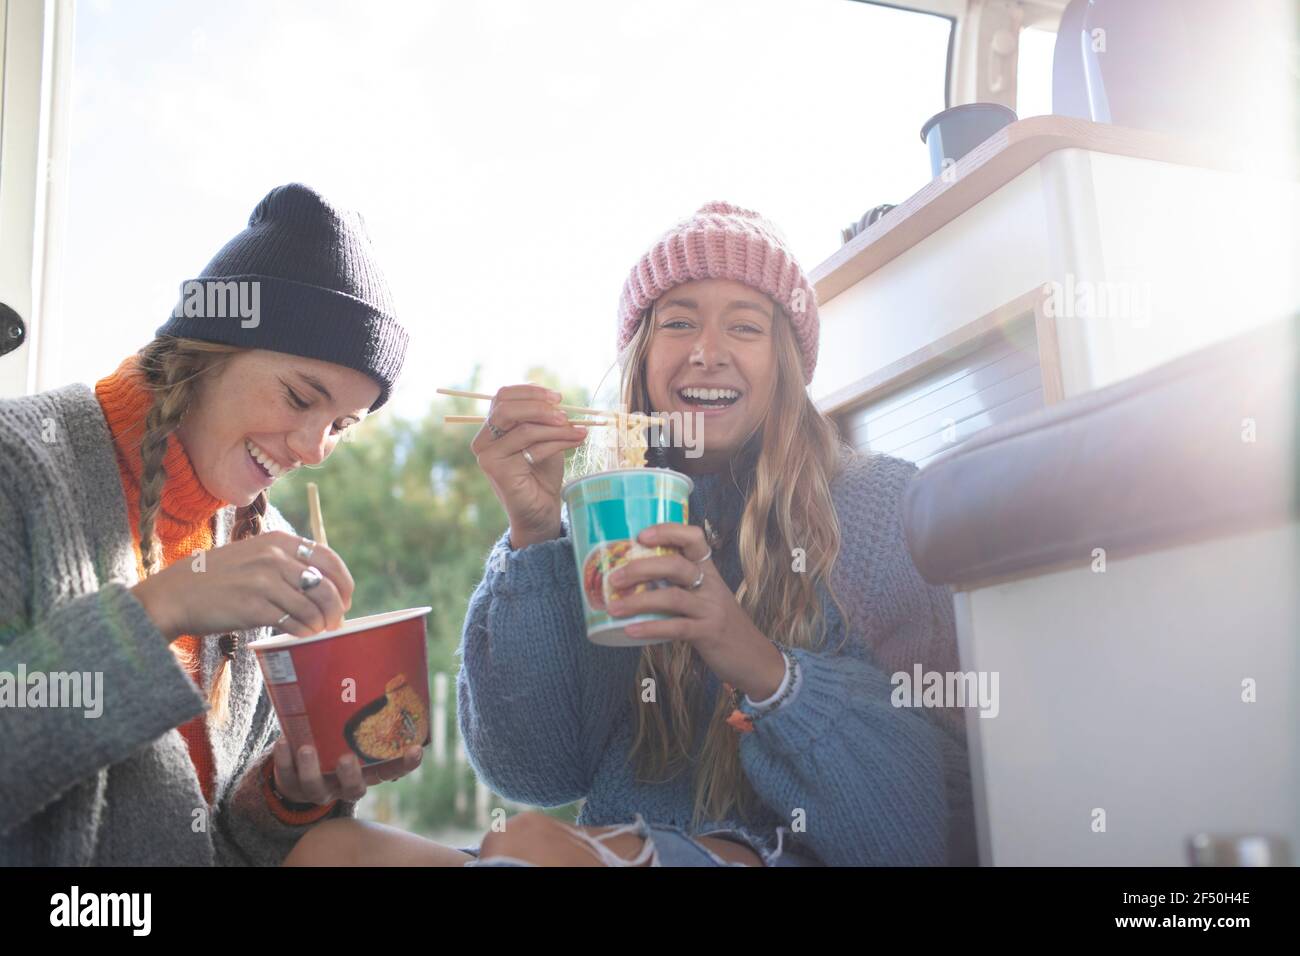 Portrait happy young women eating instant noodles in camper van Stock Photo